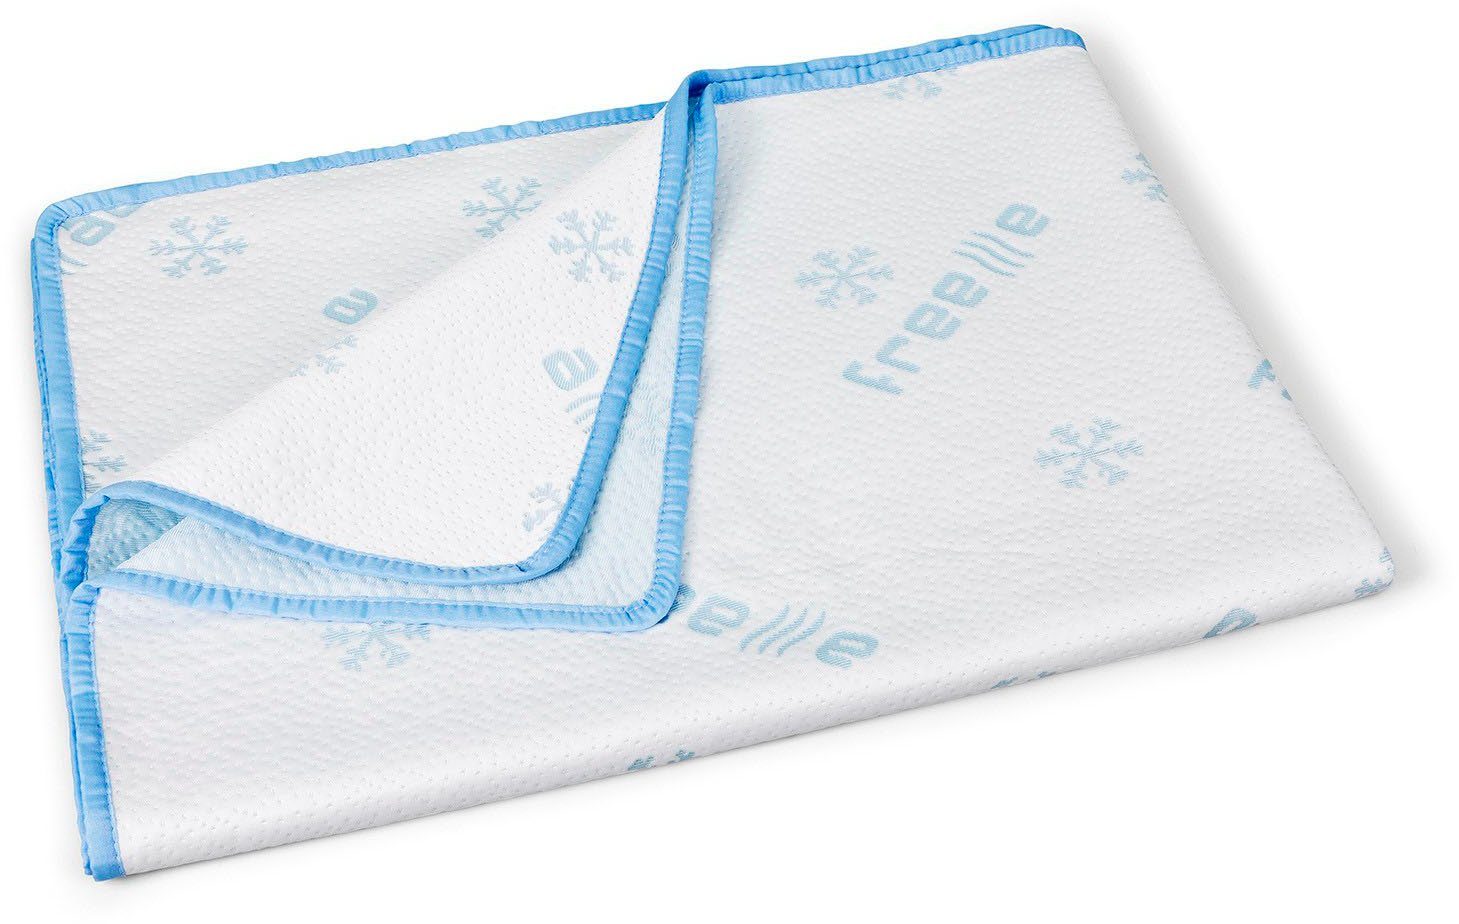 Sommerbettdecke, Freeze, DI QUATTRO, kühlende Bettdecke, 135x200 cm, ideal für die heißen Sommermonate | Microfaserbettdecken